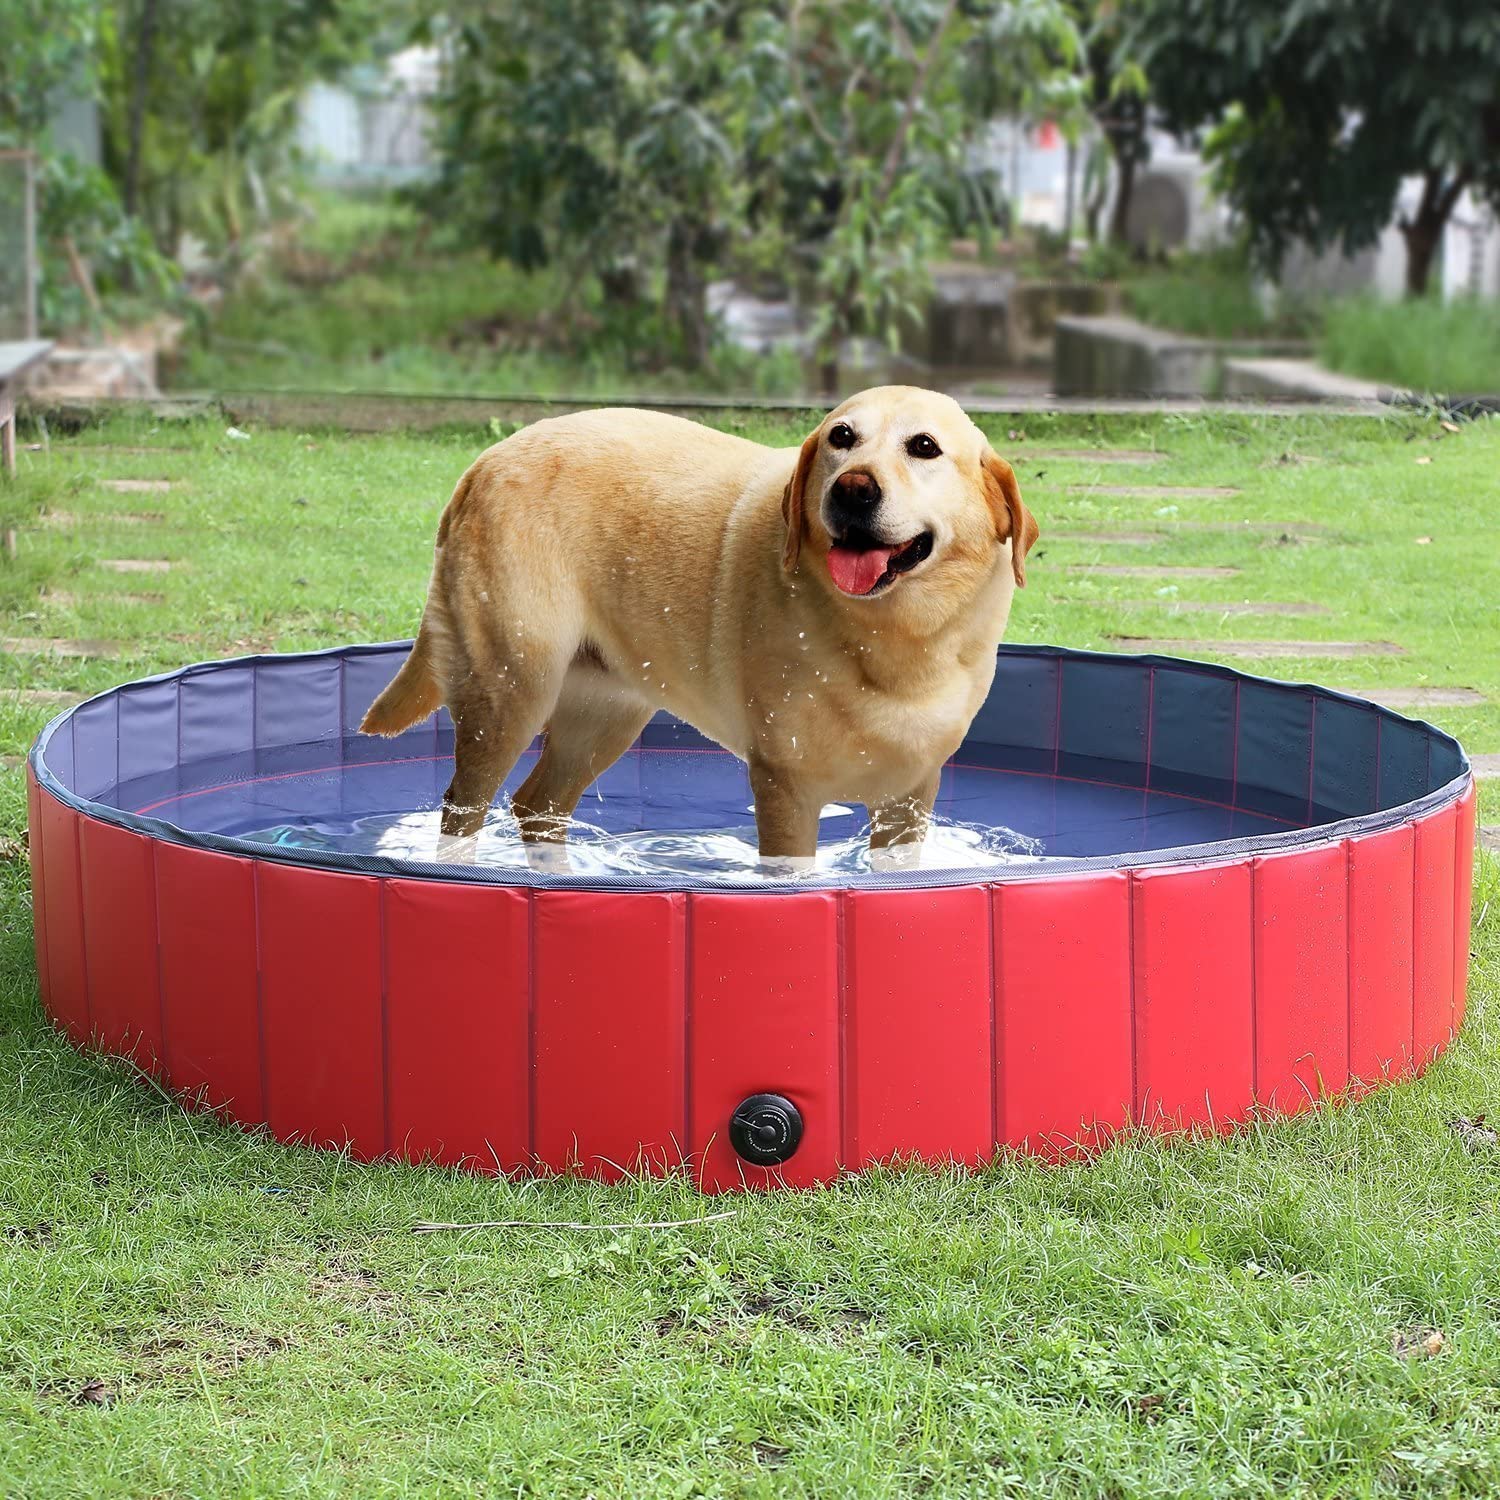  Femor Bañera Plegable de Mascotas Baño Portátil para Animales Piscina para Perros y Gatos Adecuado para Interior Exterior al Aire Libre Color Rojo (S/80 x 20cm) 